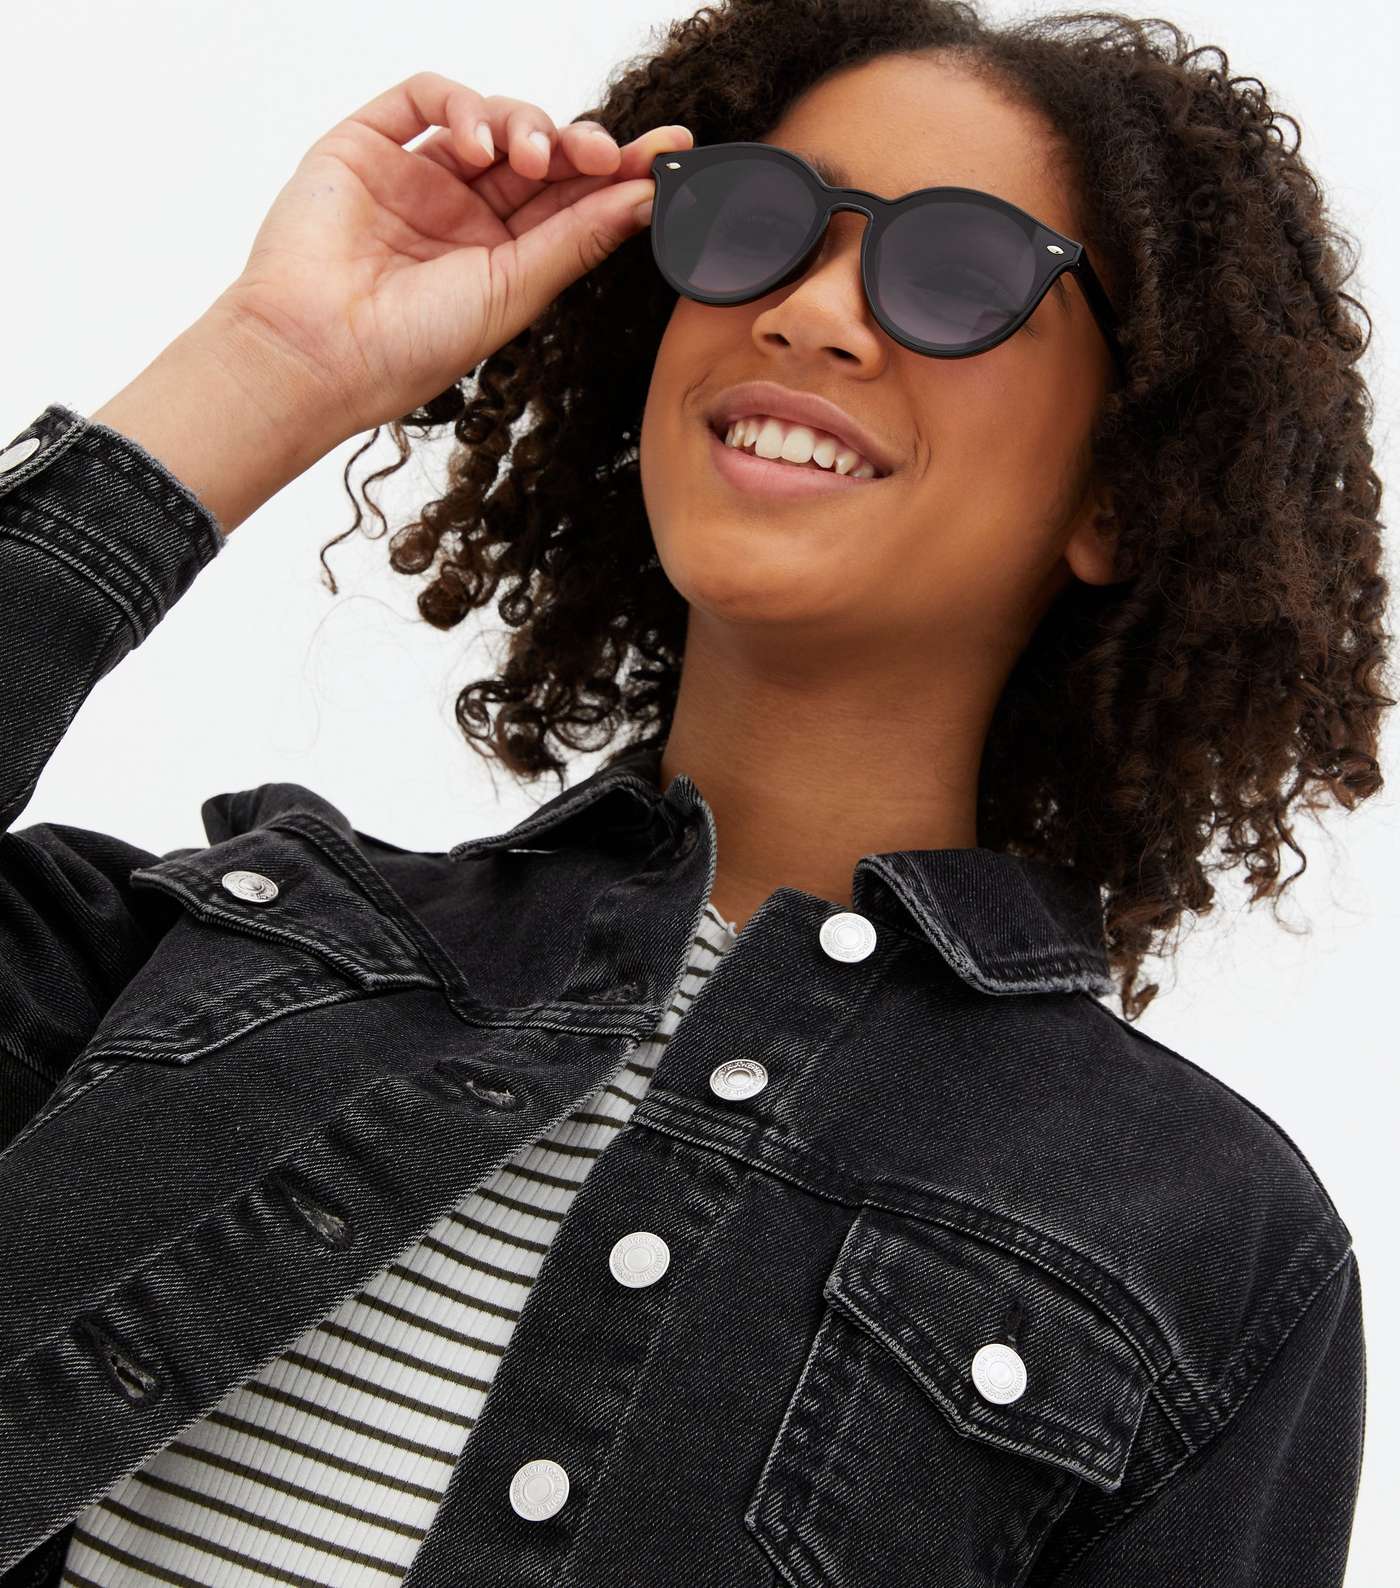 Girls 2 Pack Black and Brown Tortoiseshell Effect Frame Sunglasses